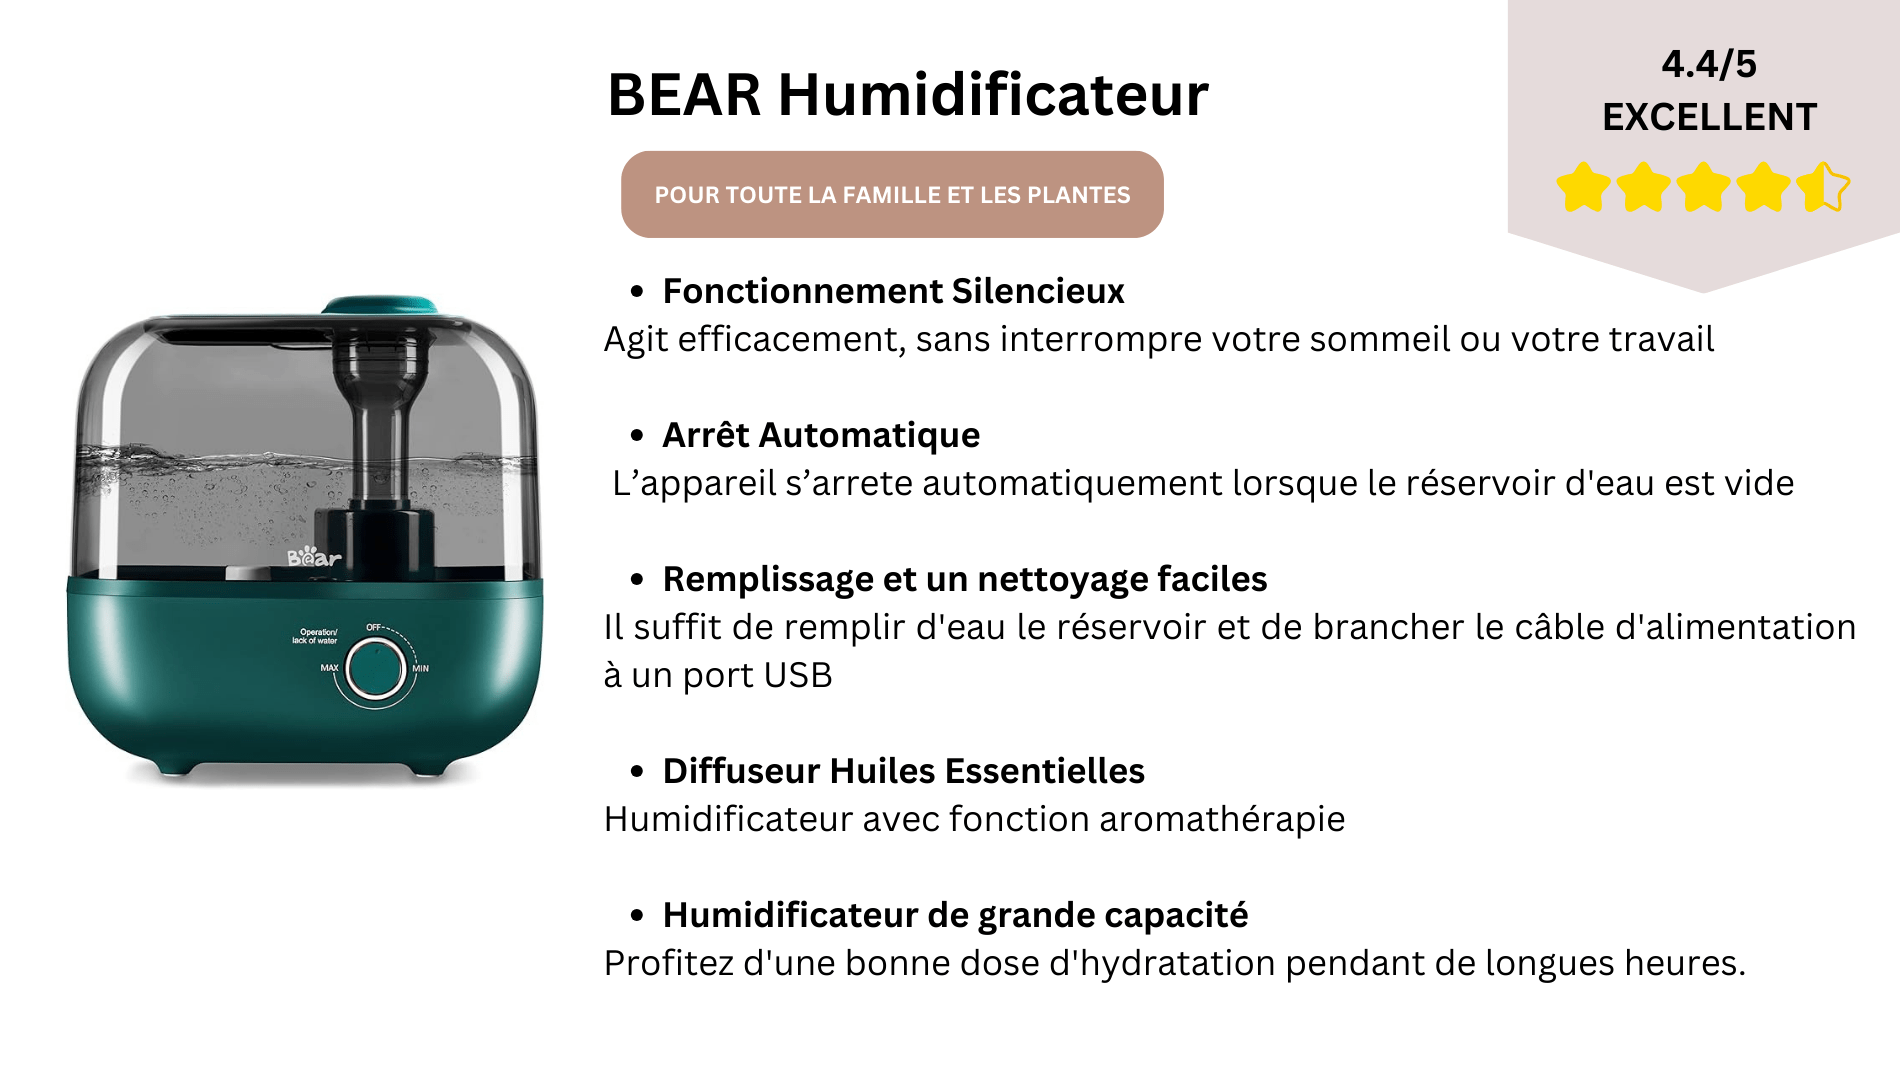 BEAR Humidificateur